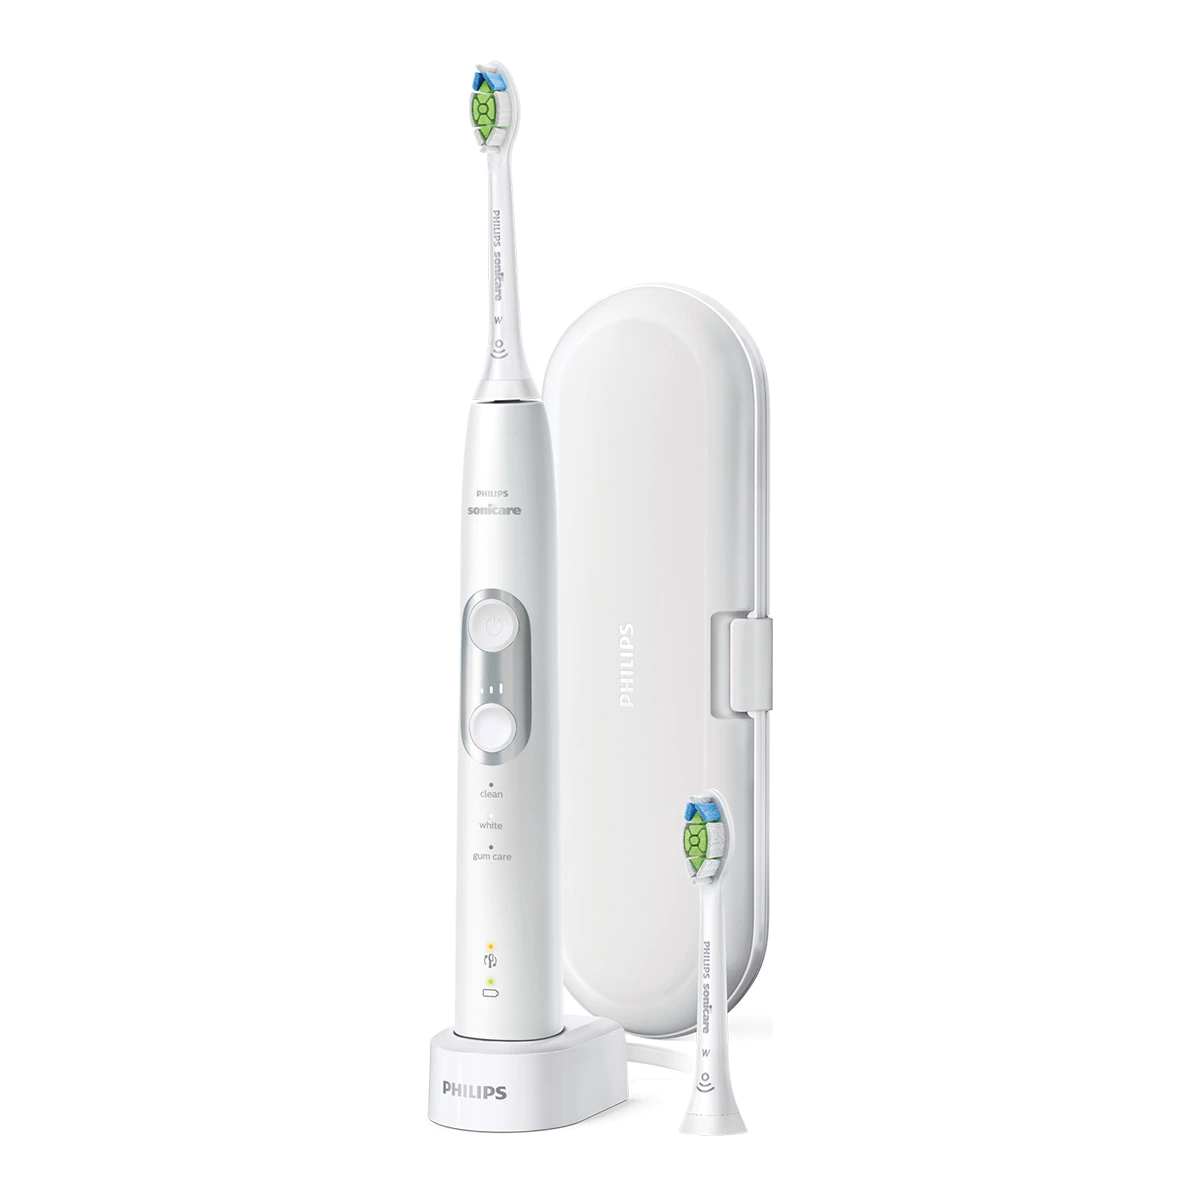 Cepillo de dientes eléctrico Philips Sonicare ProtectiveClean con 3 modos de limpieza